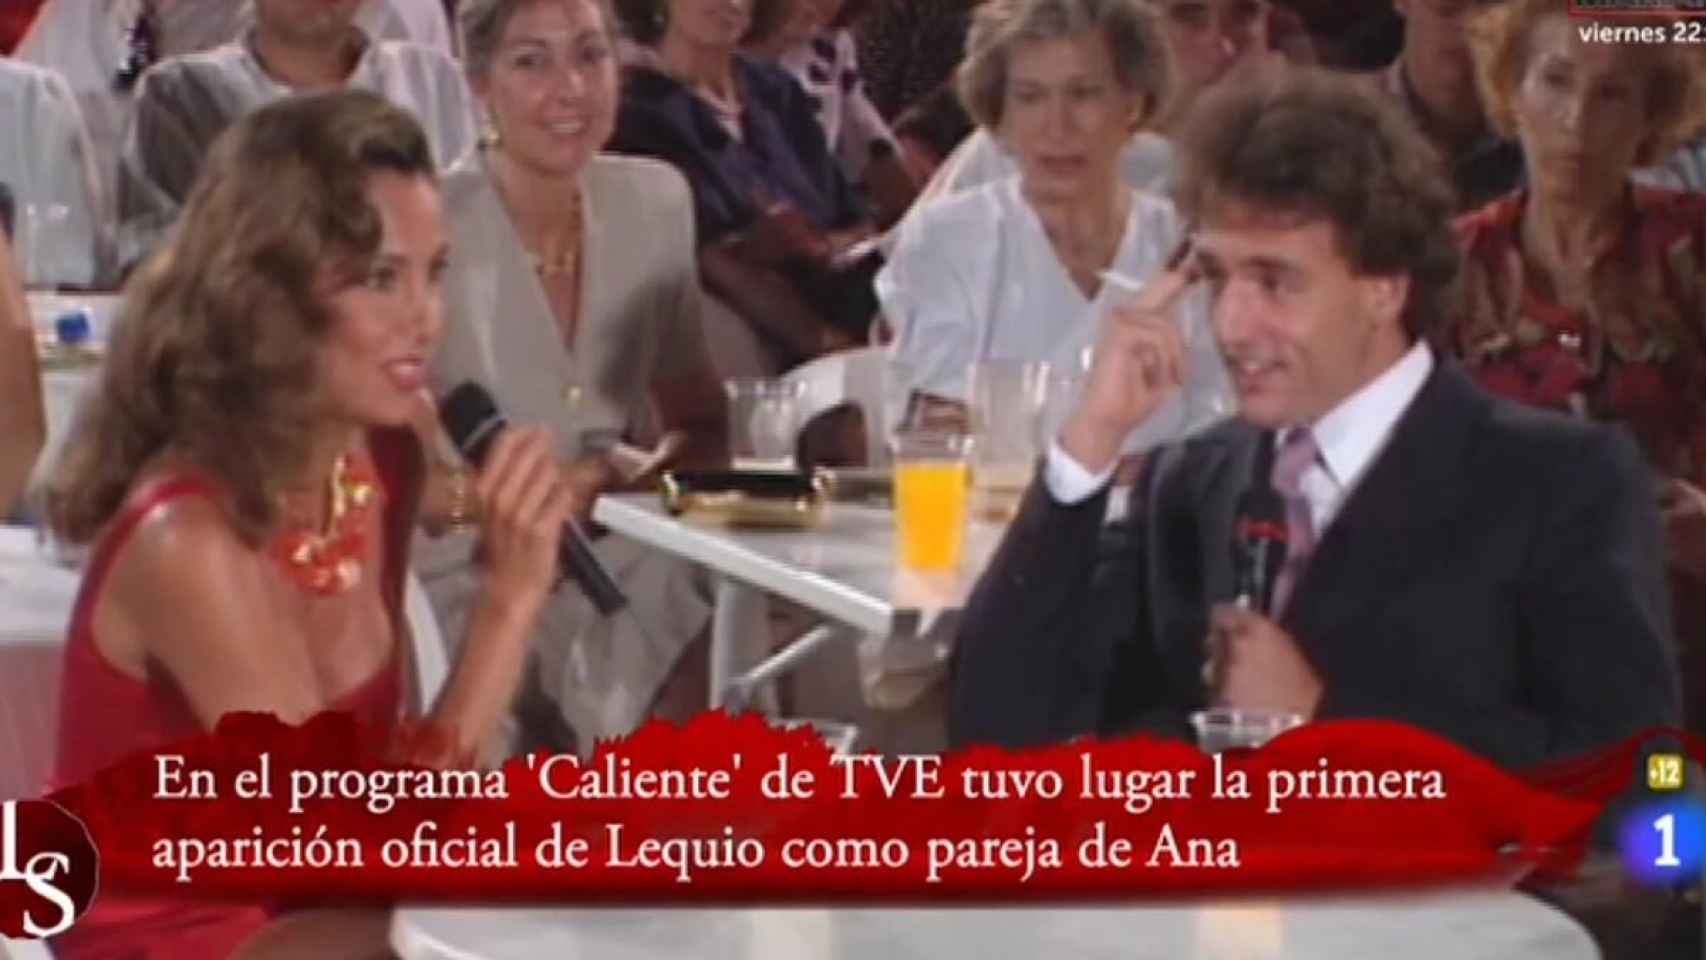 Ana Obregón, entrevistando a su futuro marido Alessandro Lequio.